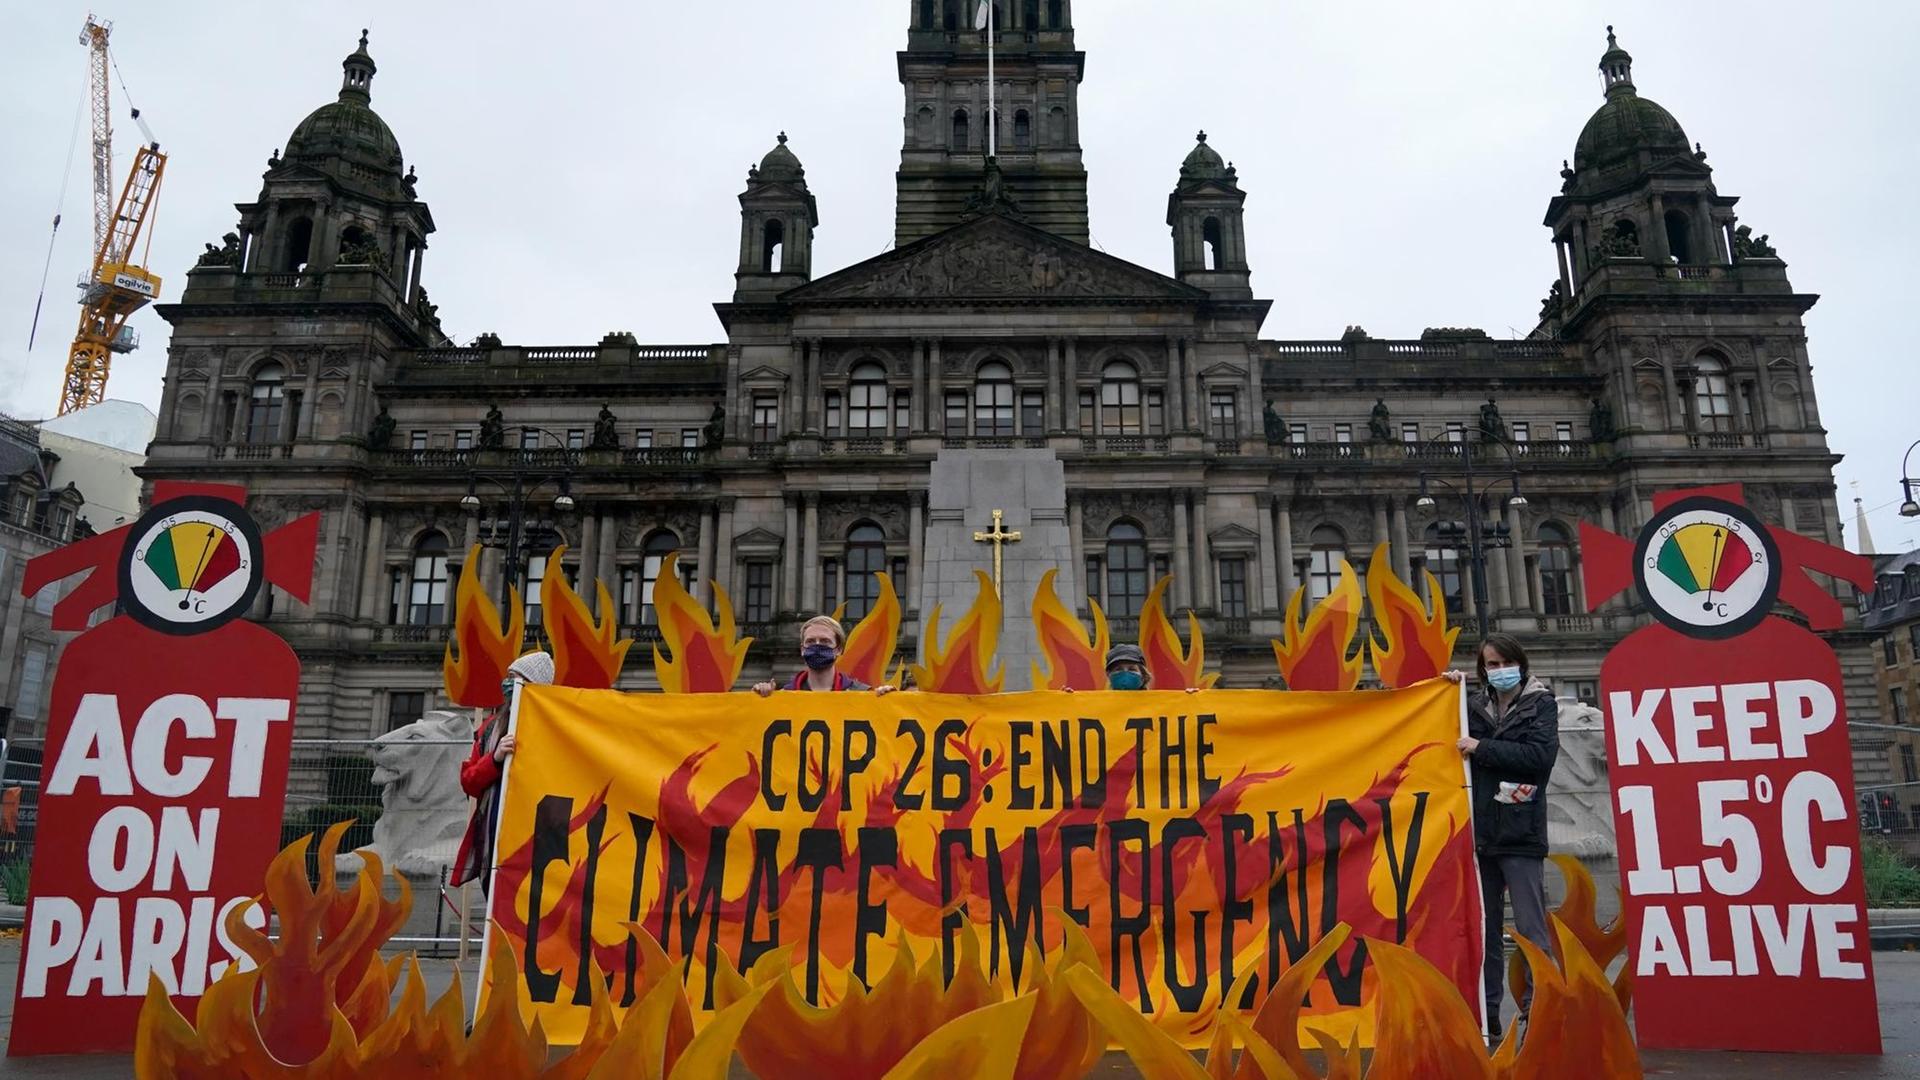 Klimaaktivisten mit einem Banner zum Klimagipfel Cop26 in Glasgow